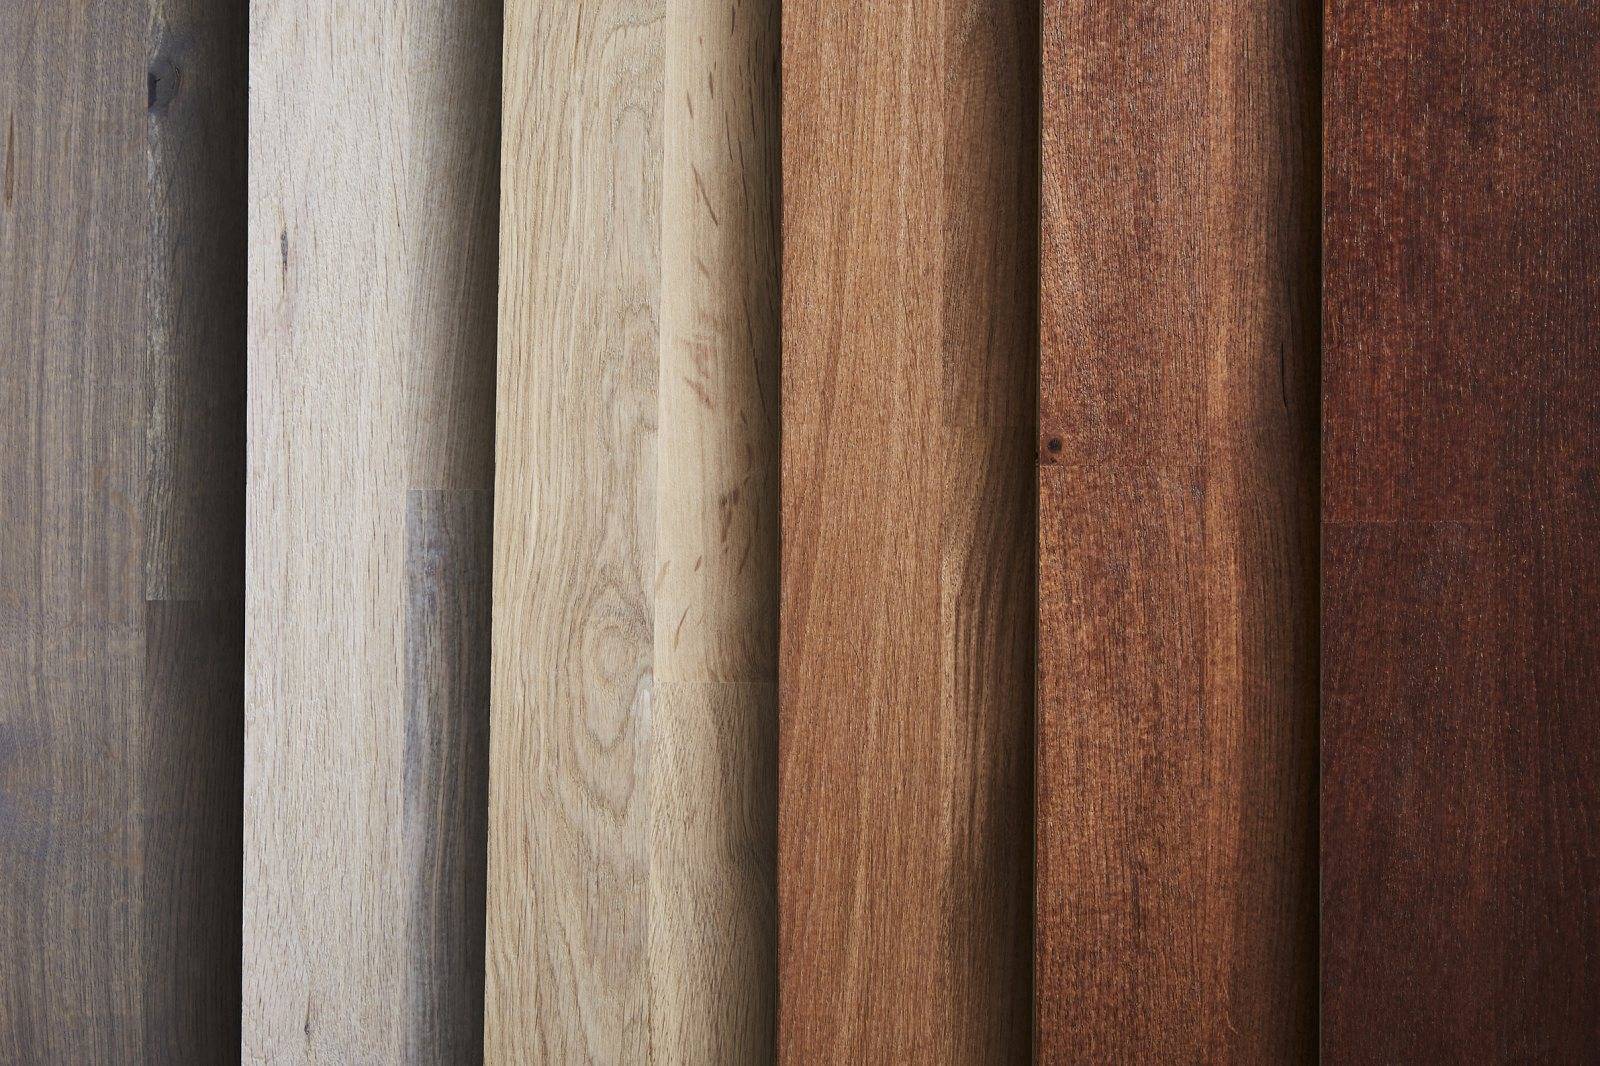 WB Primer, wood floor primer - Water-Based Primer